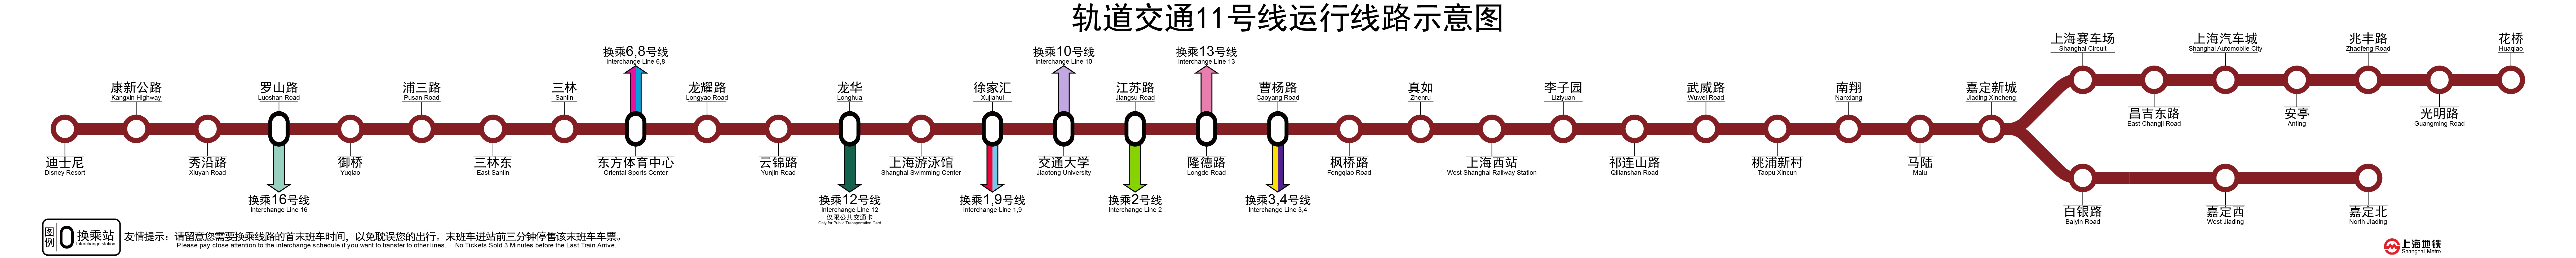 上海捷運11號線運行線路圖